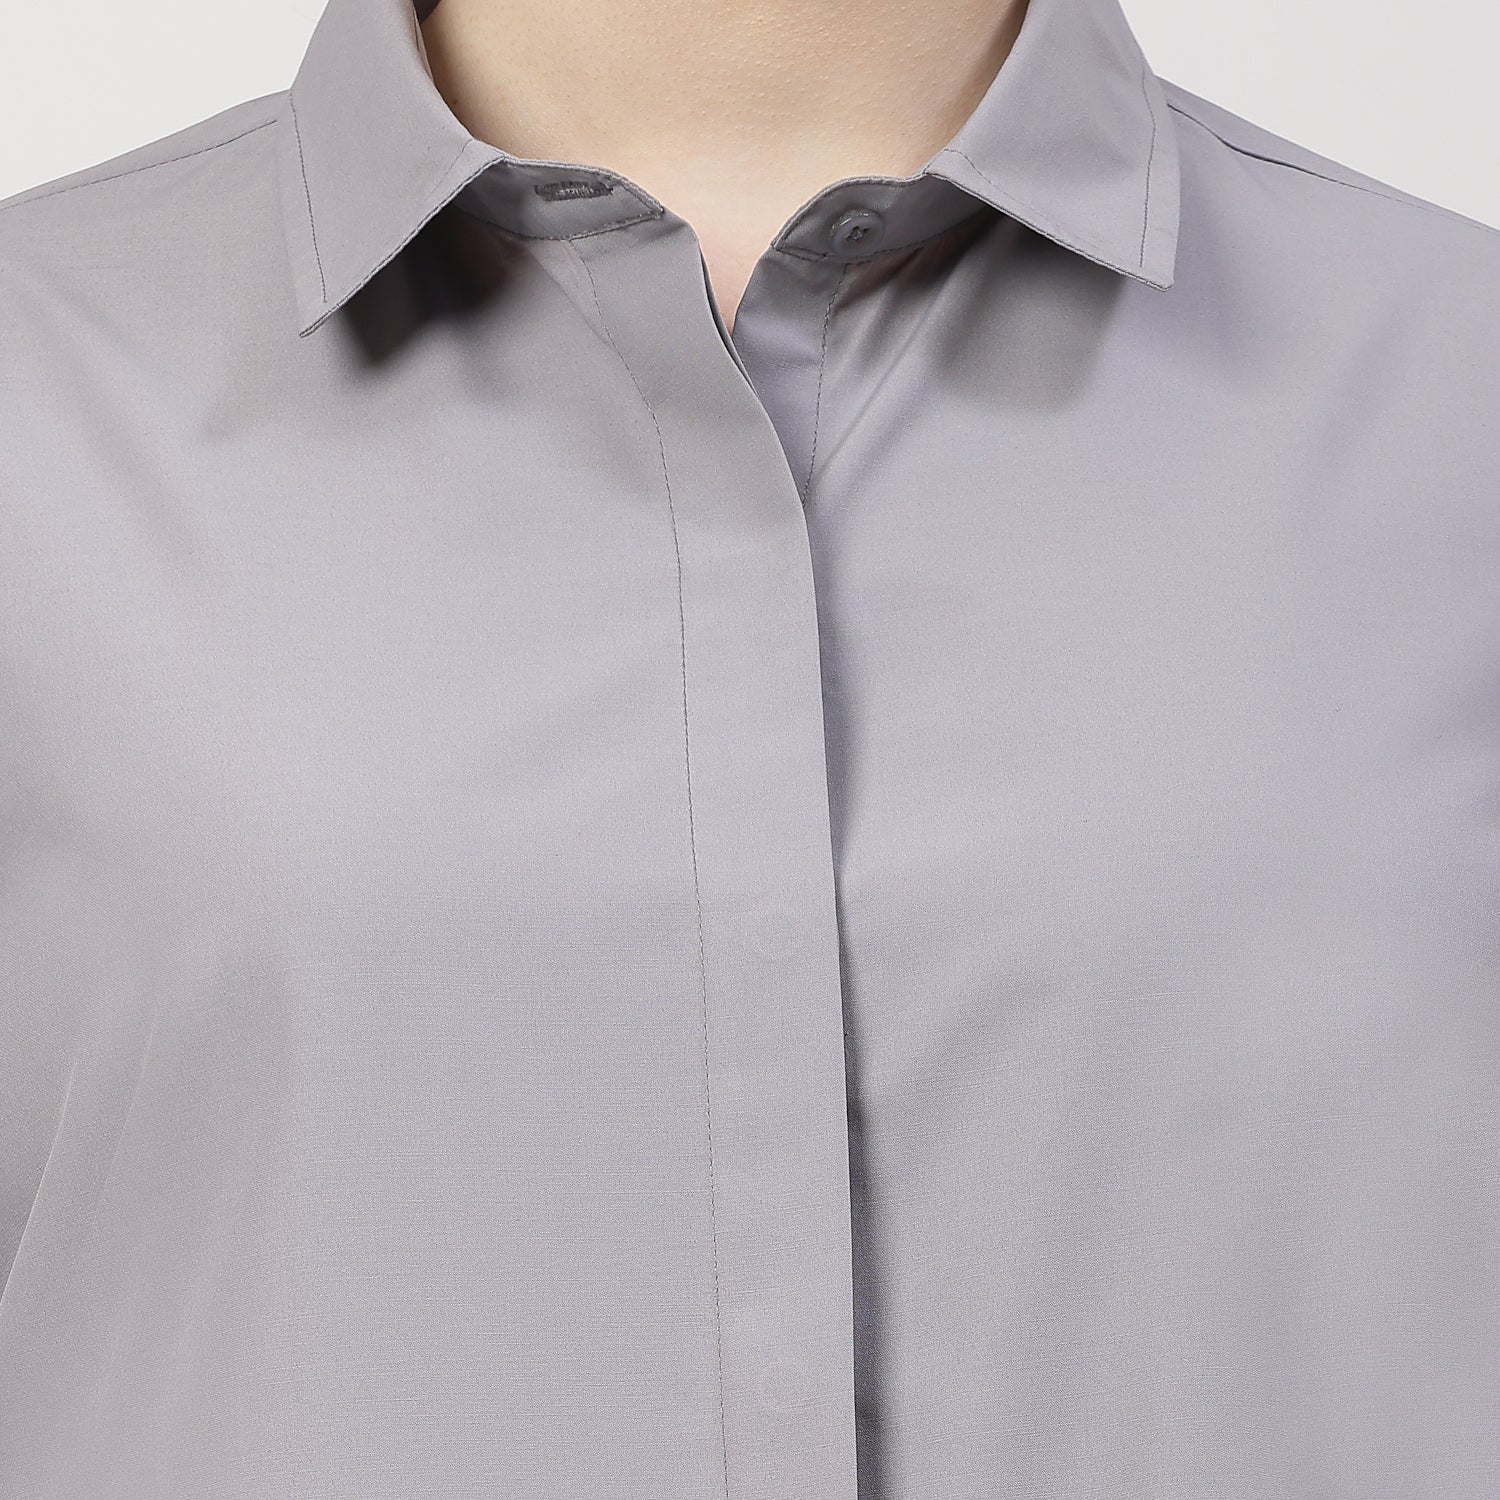 Grey Shirt With Collar